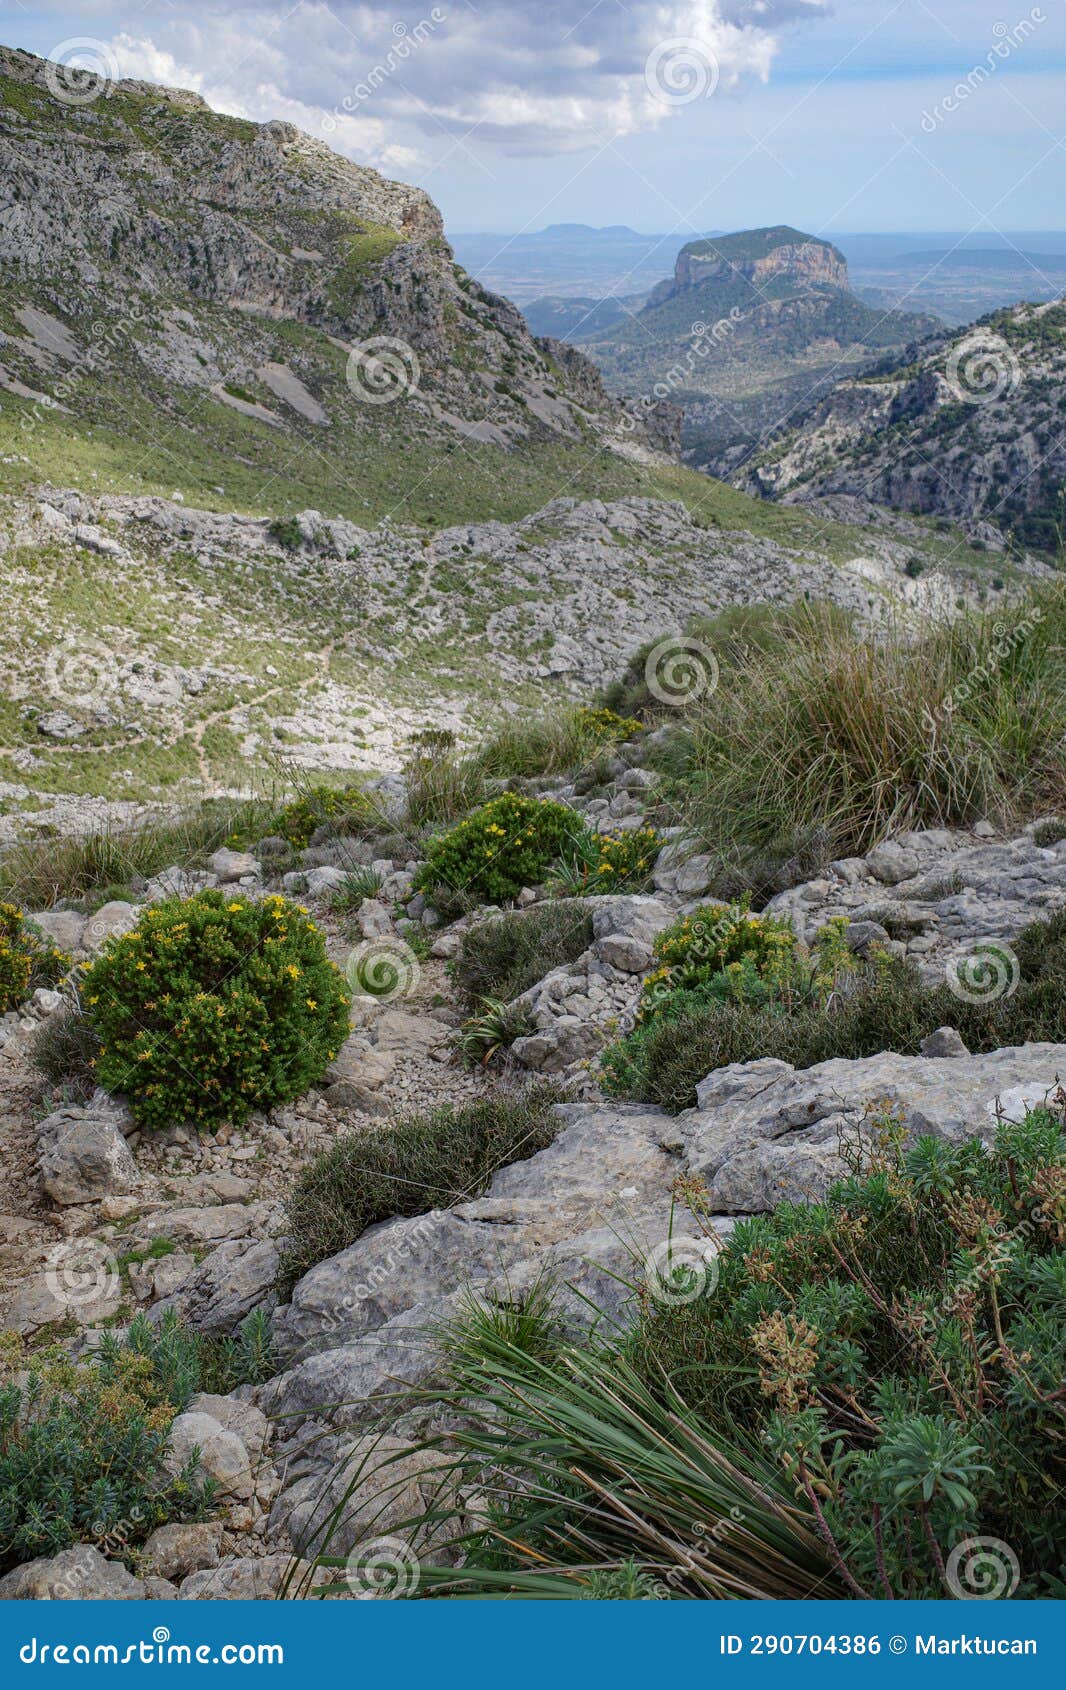 mallorca, spain - 12 june, 2023: views along the gr221 trail through the tramuntana mountains, mallorca